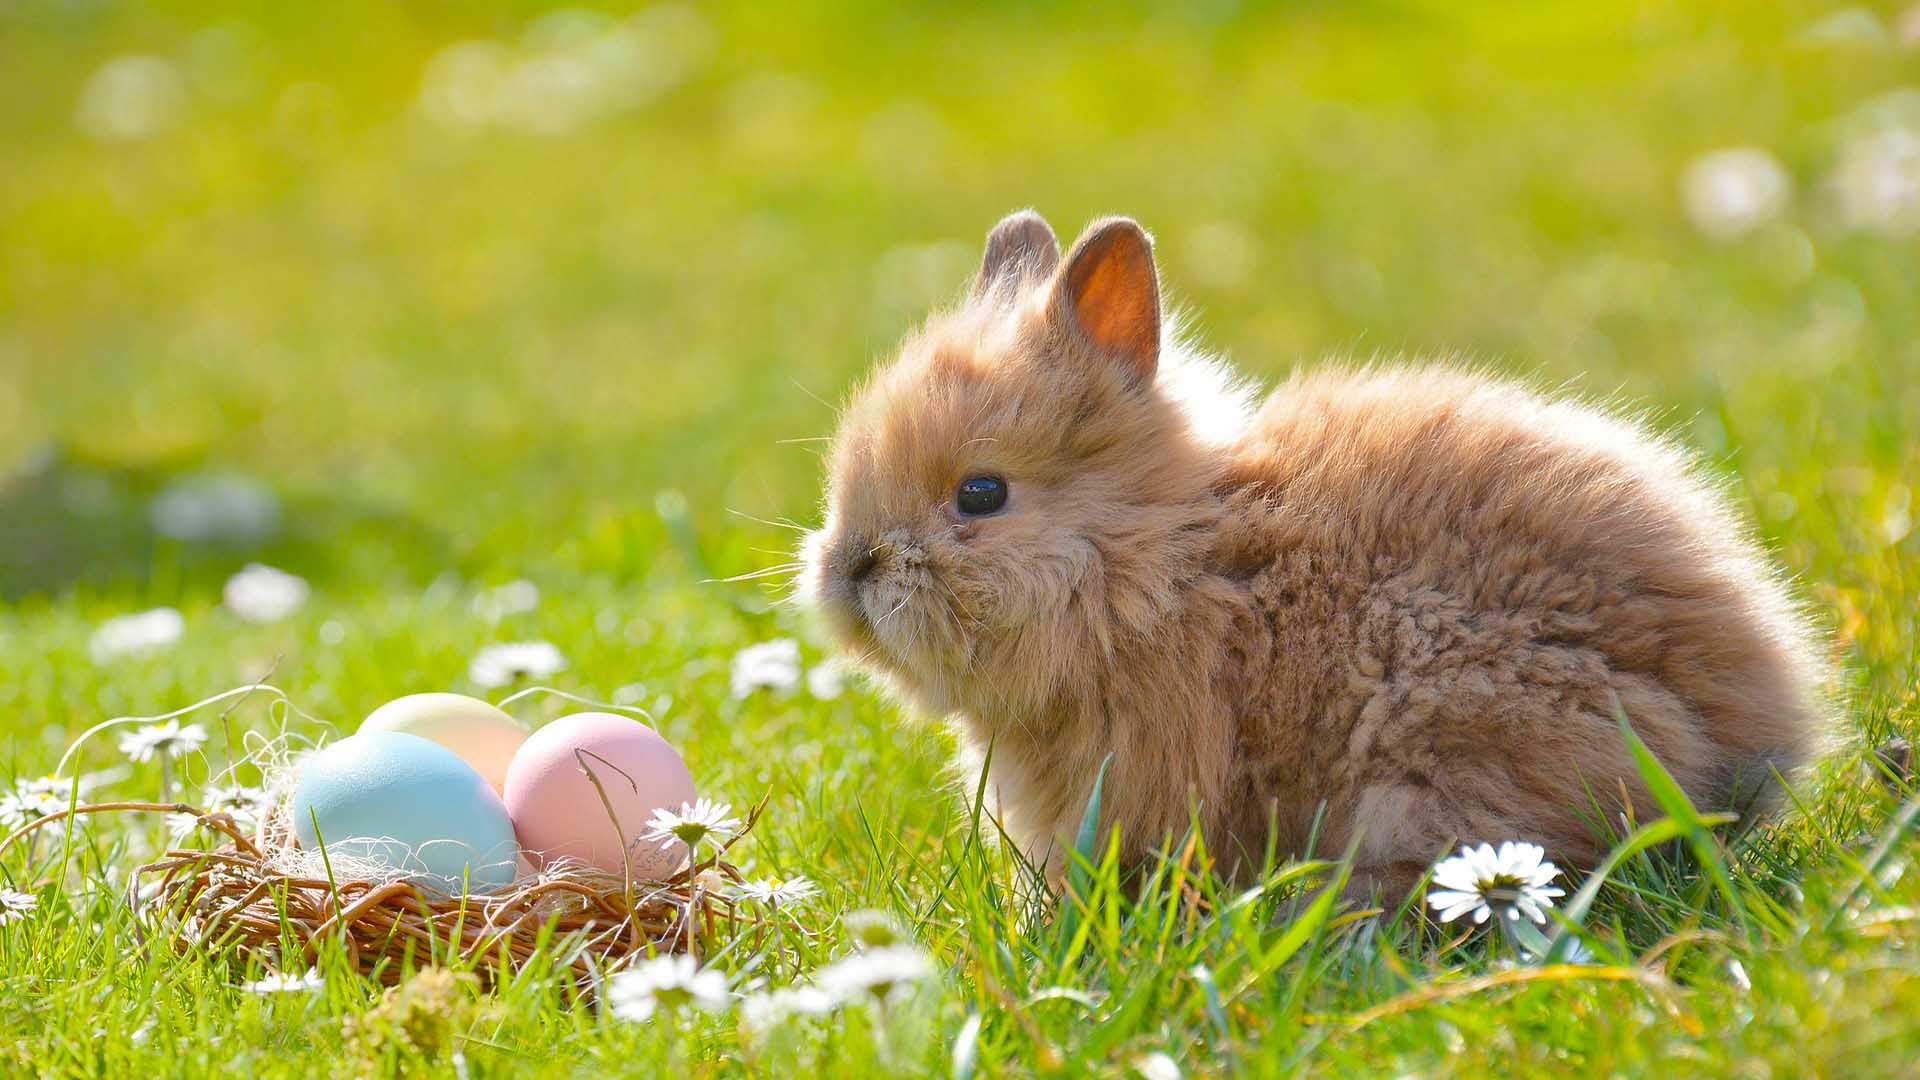 A képen egy húsvéti nyuszi, húsvéti nyúl látható, illetve színes, festett húsvéti tojások